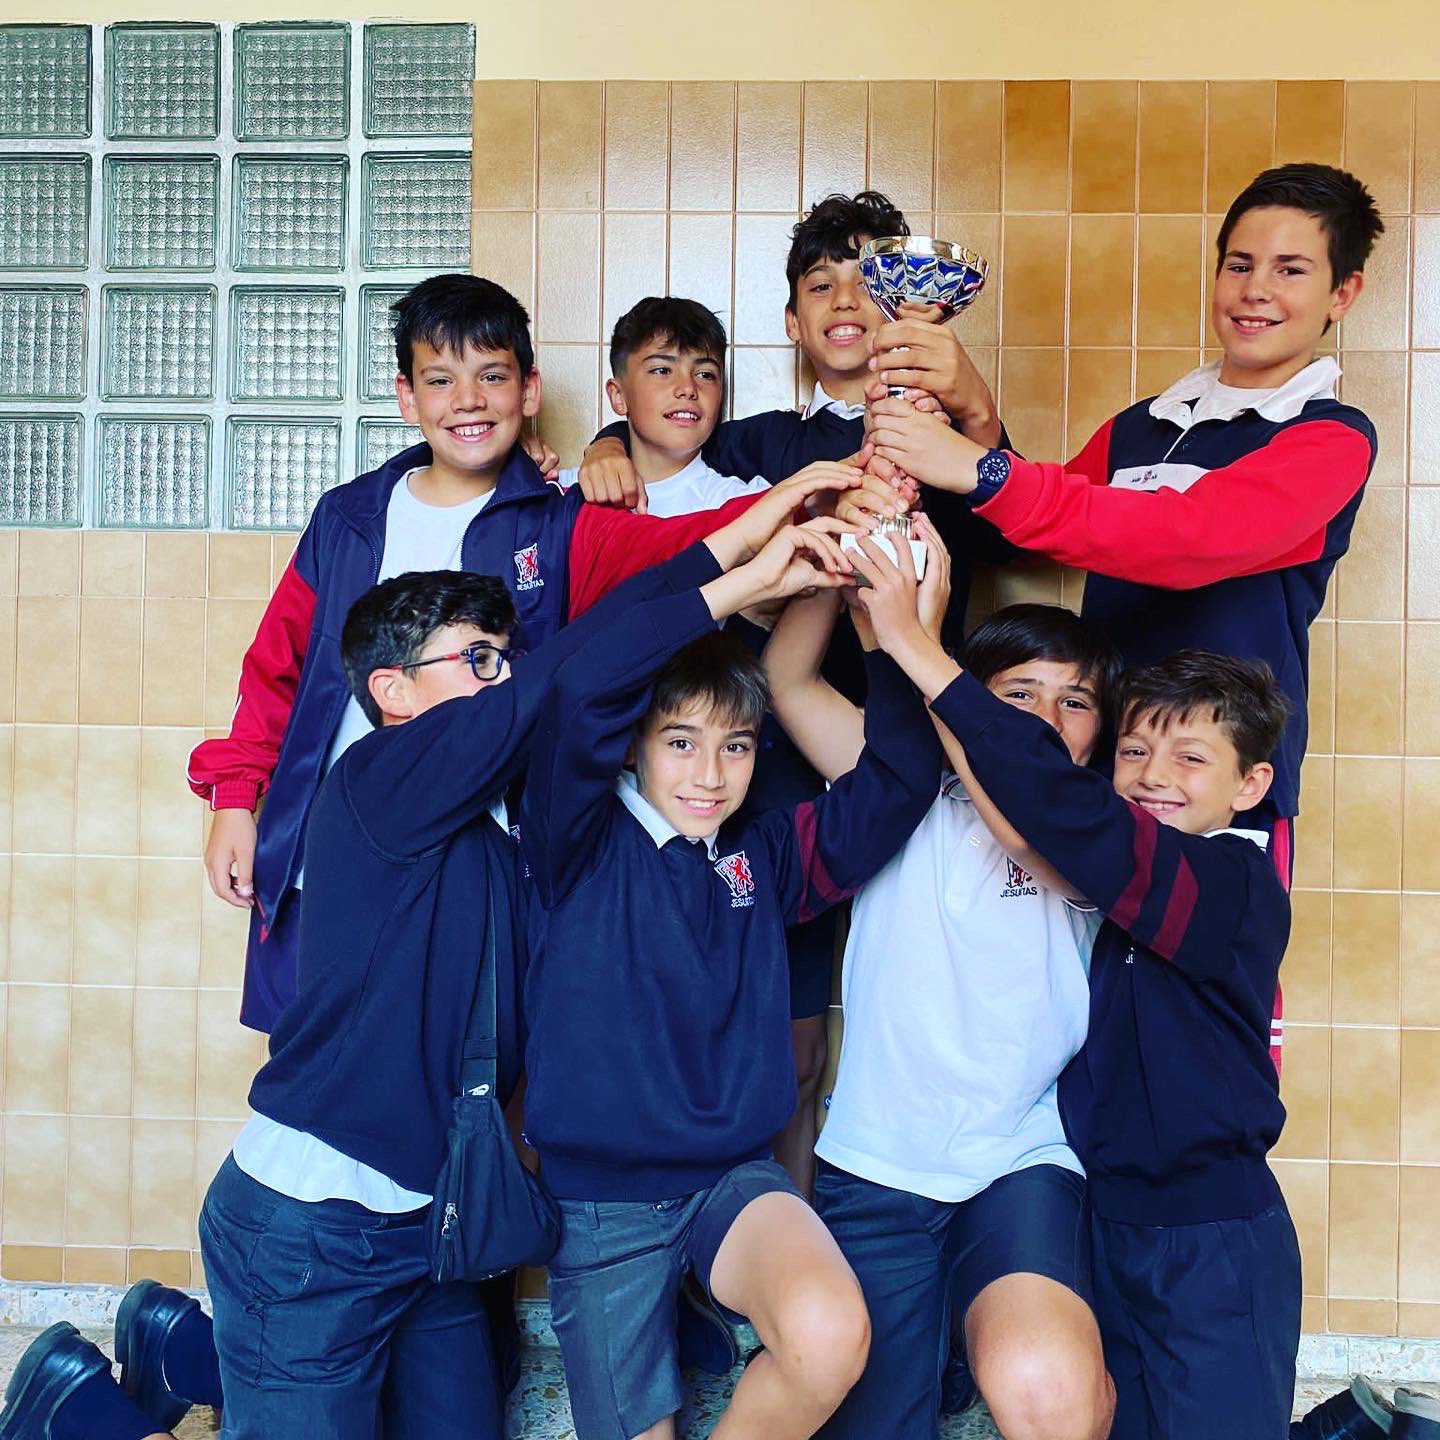 Jesuitas León "Nuestros alumnos de 6° de Primaria del club de fútbol Loyola colegio posando con el trofeo que han ganado quedando los cuartos del torneo de la Virgen